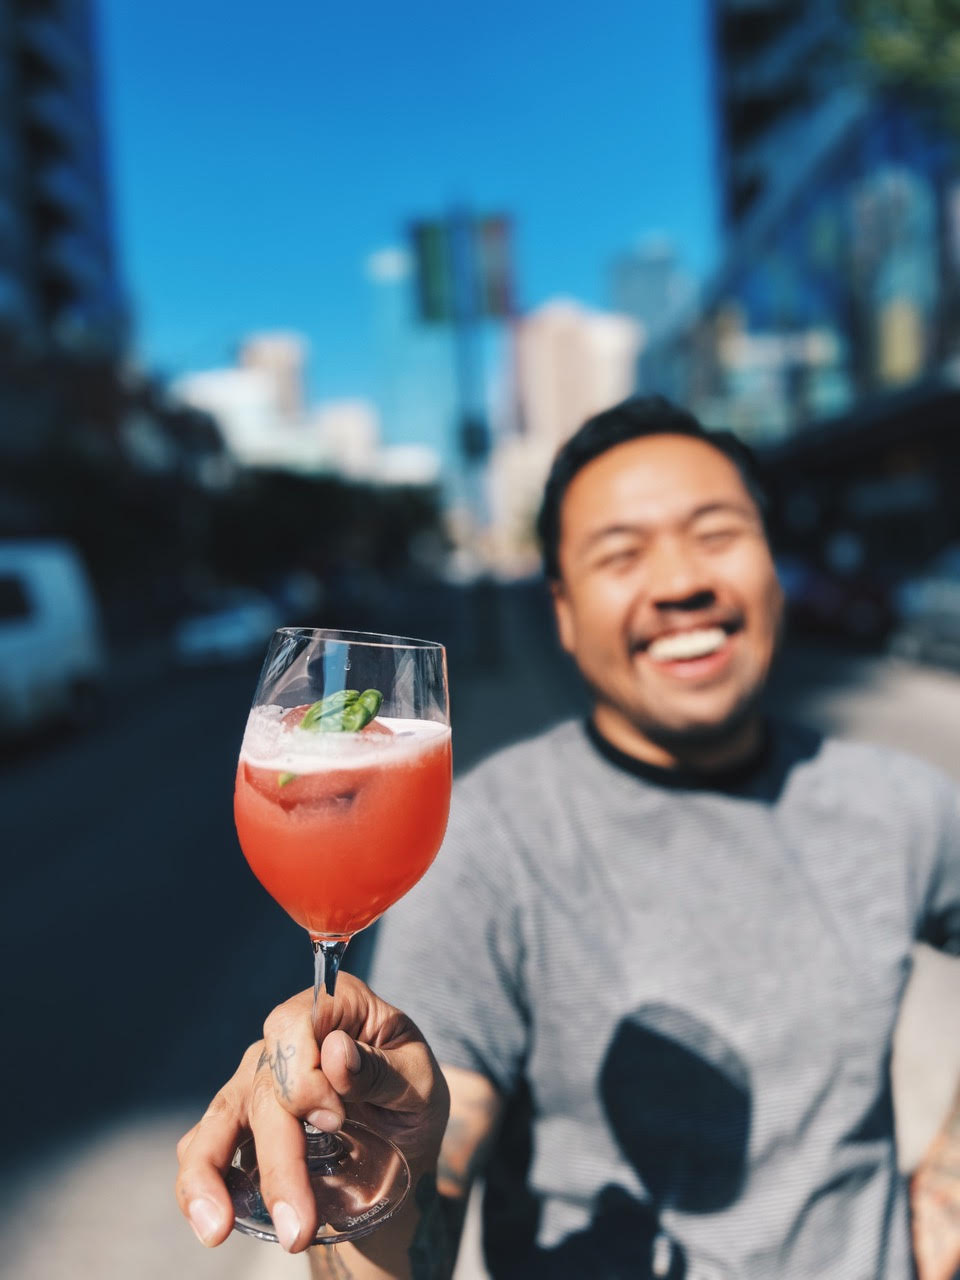 Pride Cocktail: Love is Blind